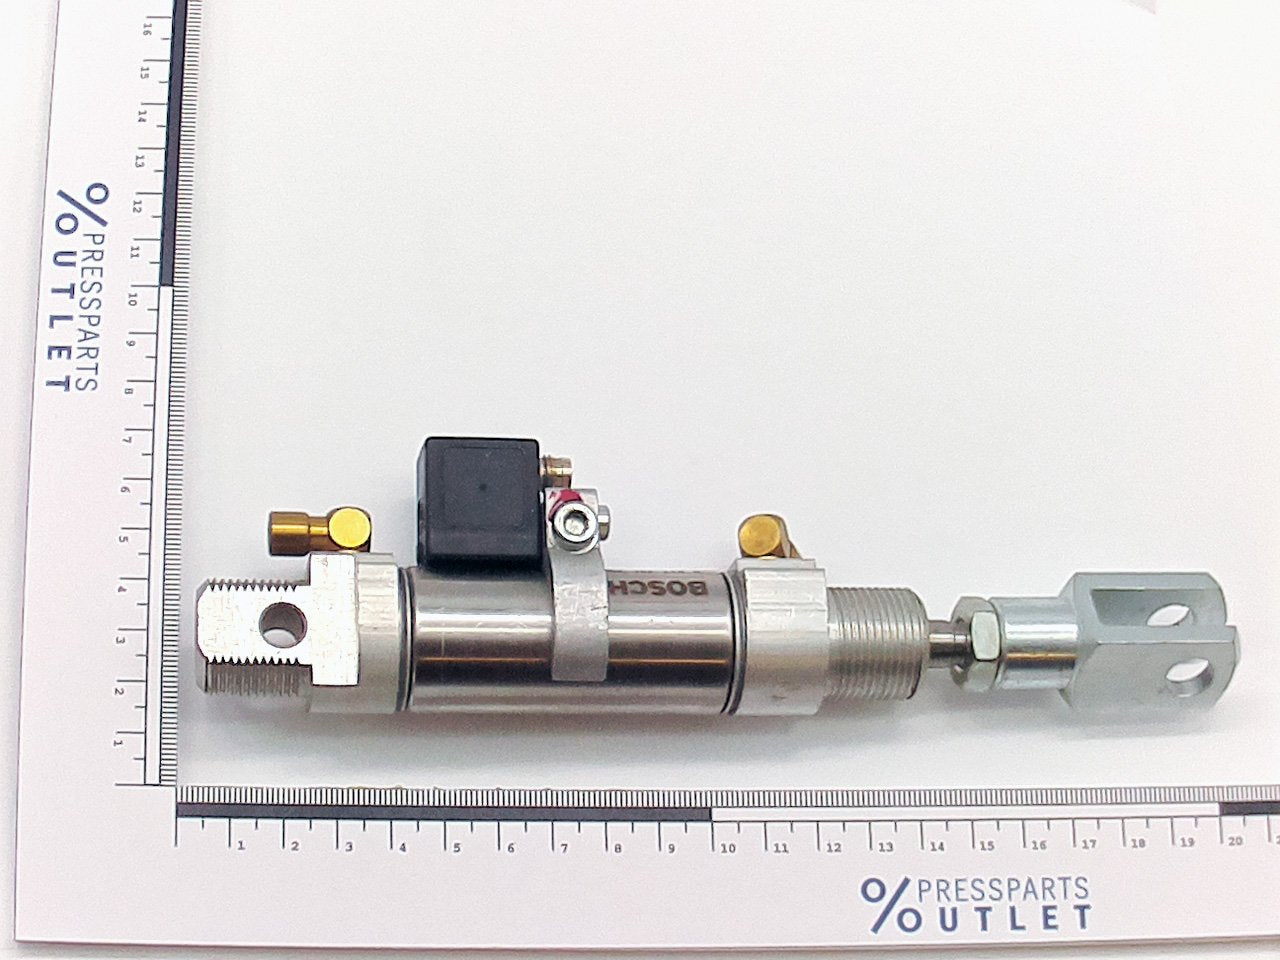 Pneumatic cylinder D25 H25 - G4.334.001 /01 - Pneumatikzylinder D25 H25